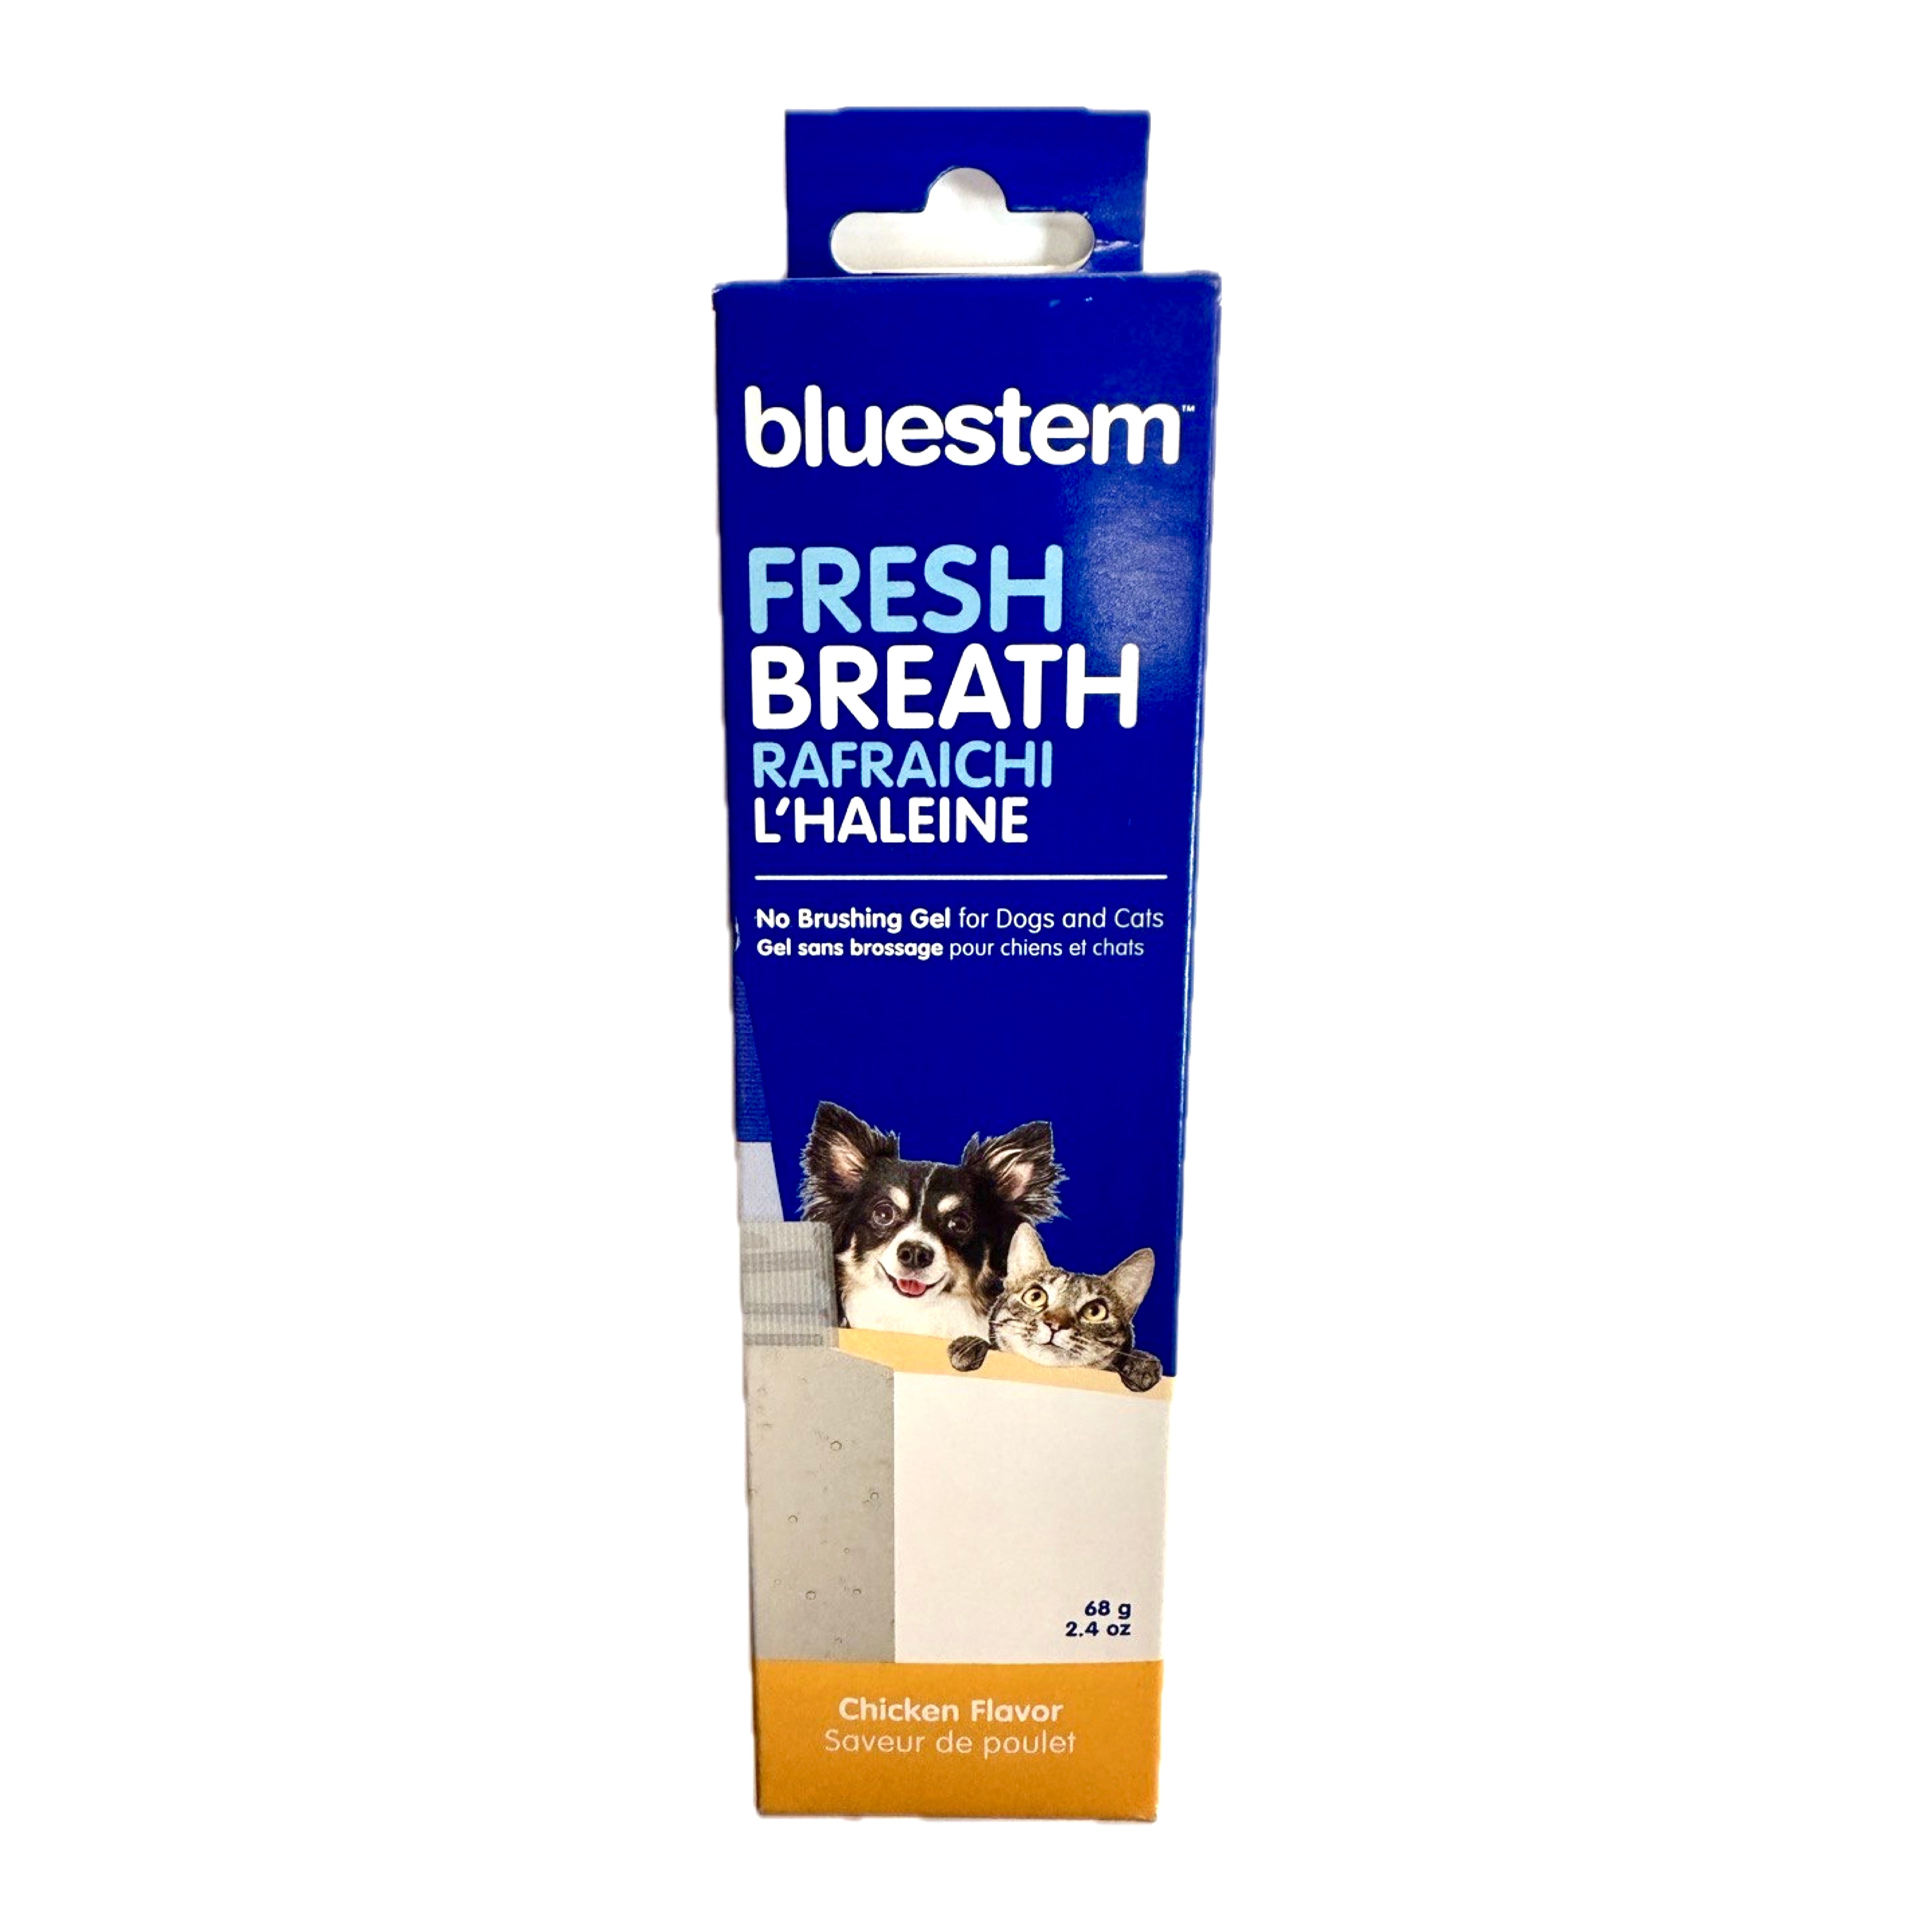 Bluestem Fresh Breath No Brushing Gel, 2.4oz